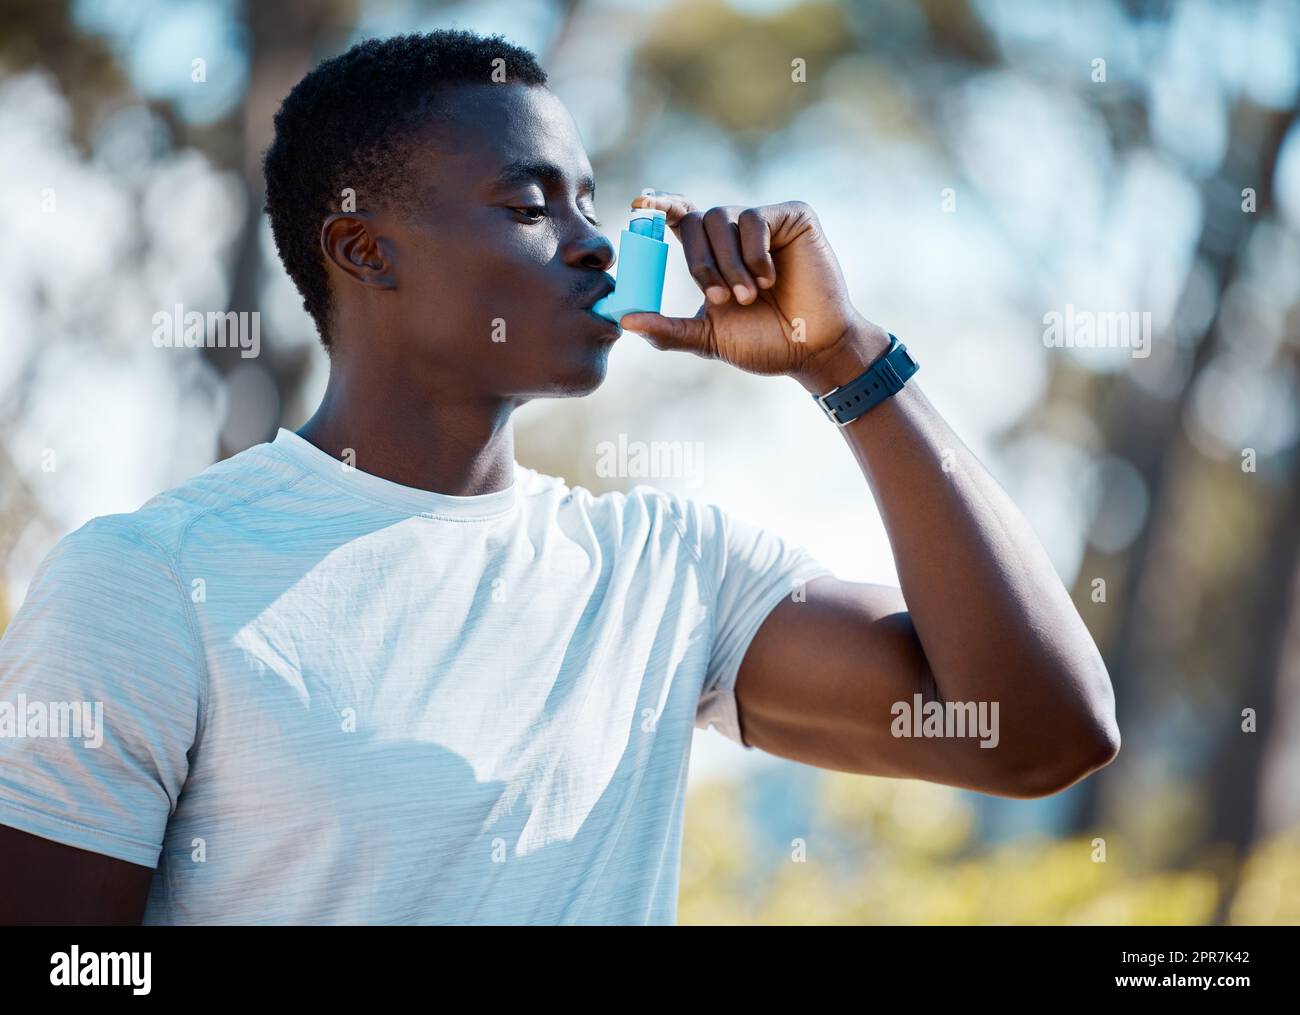 Un giovane africano che si prende una pausa da un allenamento per usare la sua pompa per l'asma. Allenate l'atleta usando il suo inalatore per l'asma durante un attacco d'asma mentre vi allenate all'aperto. Uomo atletico che utilizza un trattamento medico Foto Stock